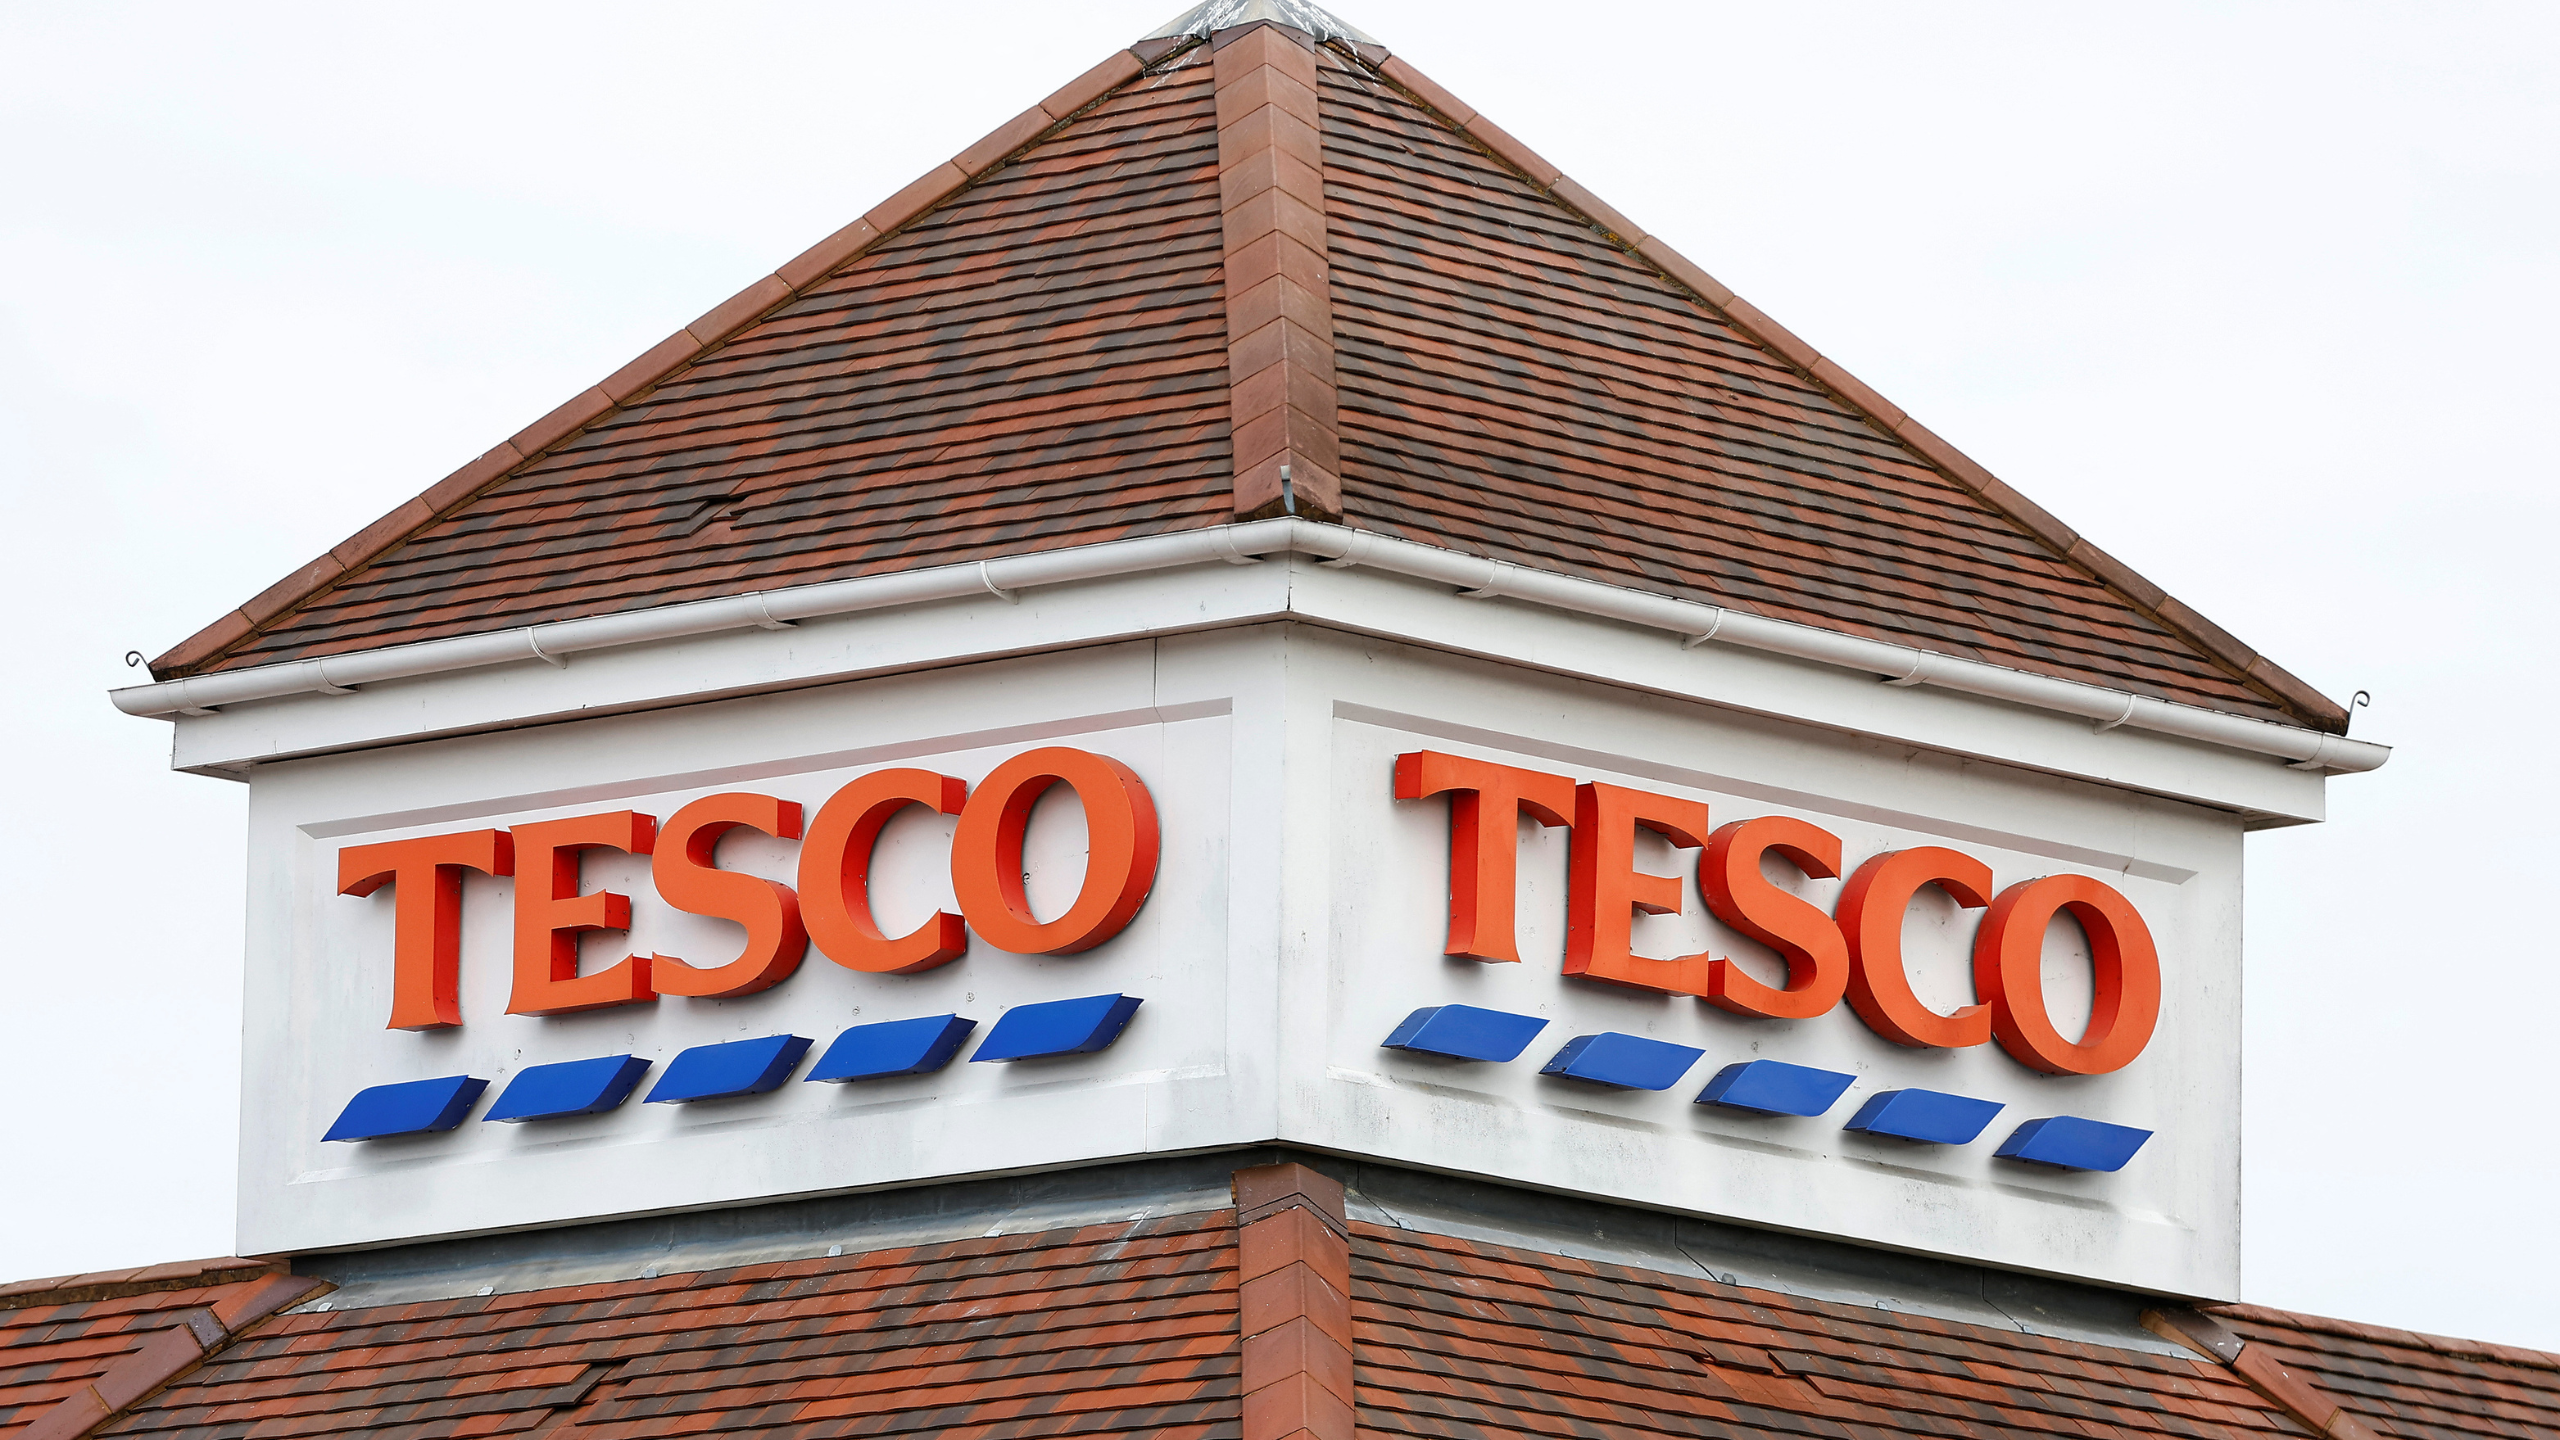 Le personnel de Tesco est toujours payé moins que le salaire minimum alors que les supermarchés sont en difficulté